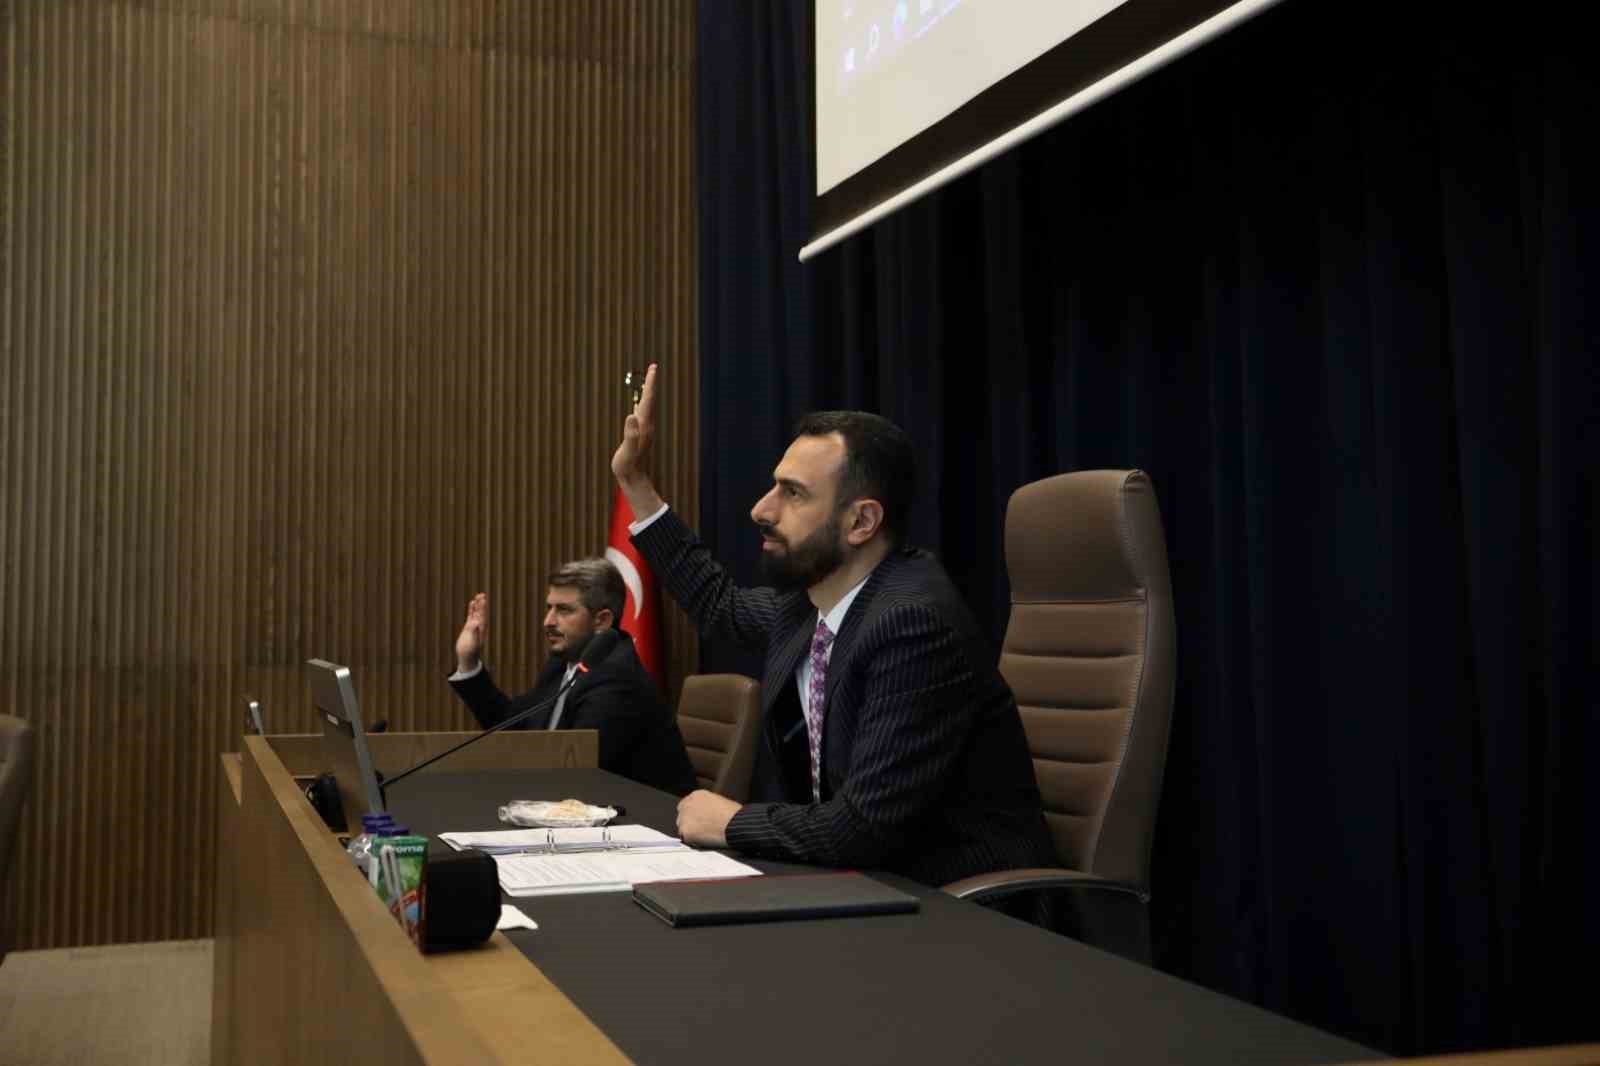 İnegöl Belediyesi Haziran Ayı Meclis Toplantısı Yapıldı